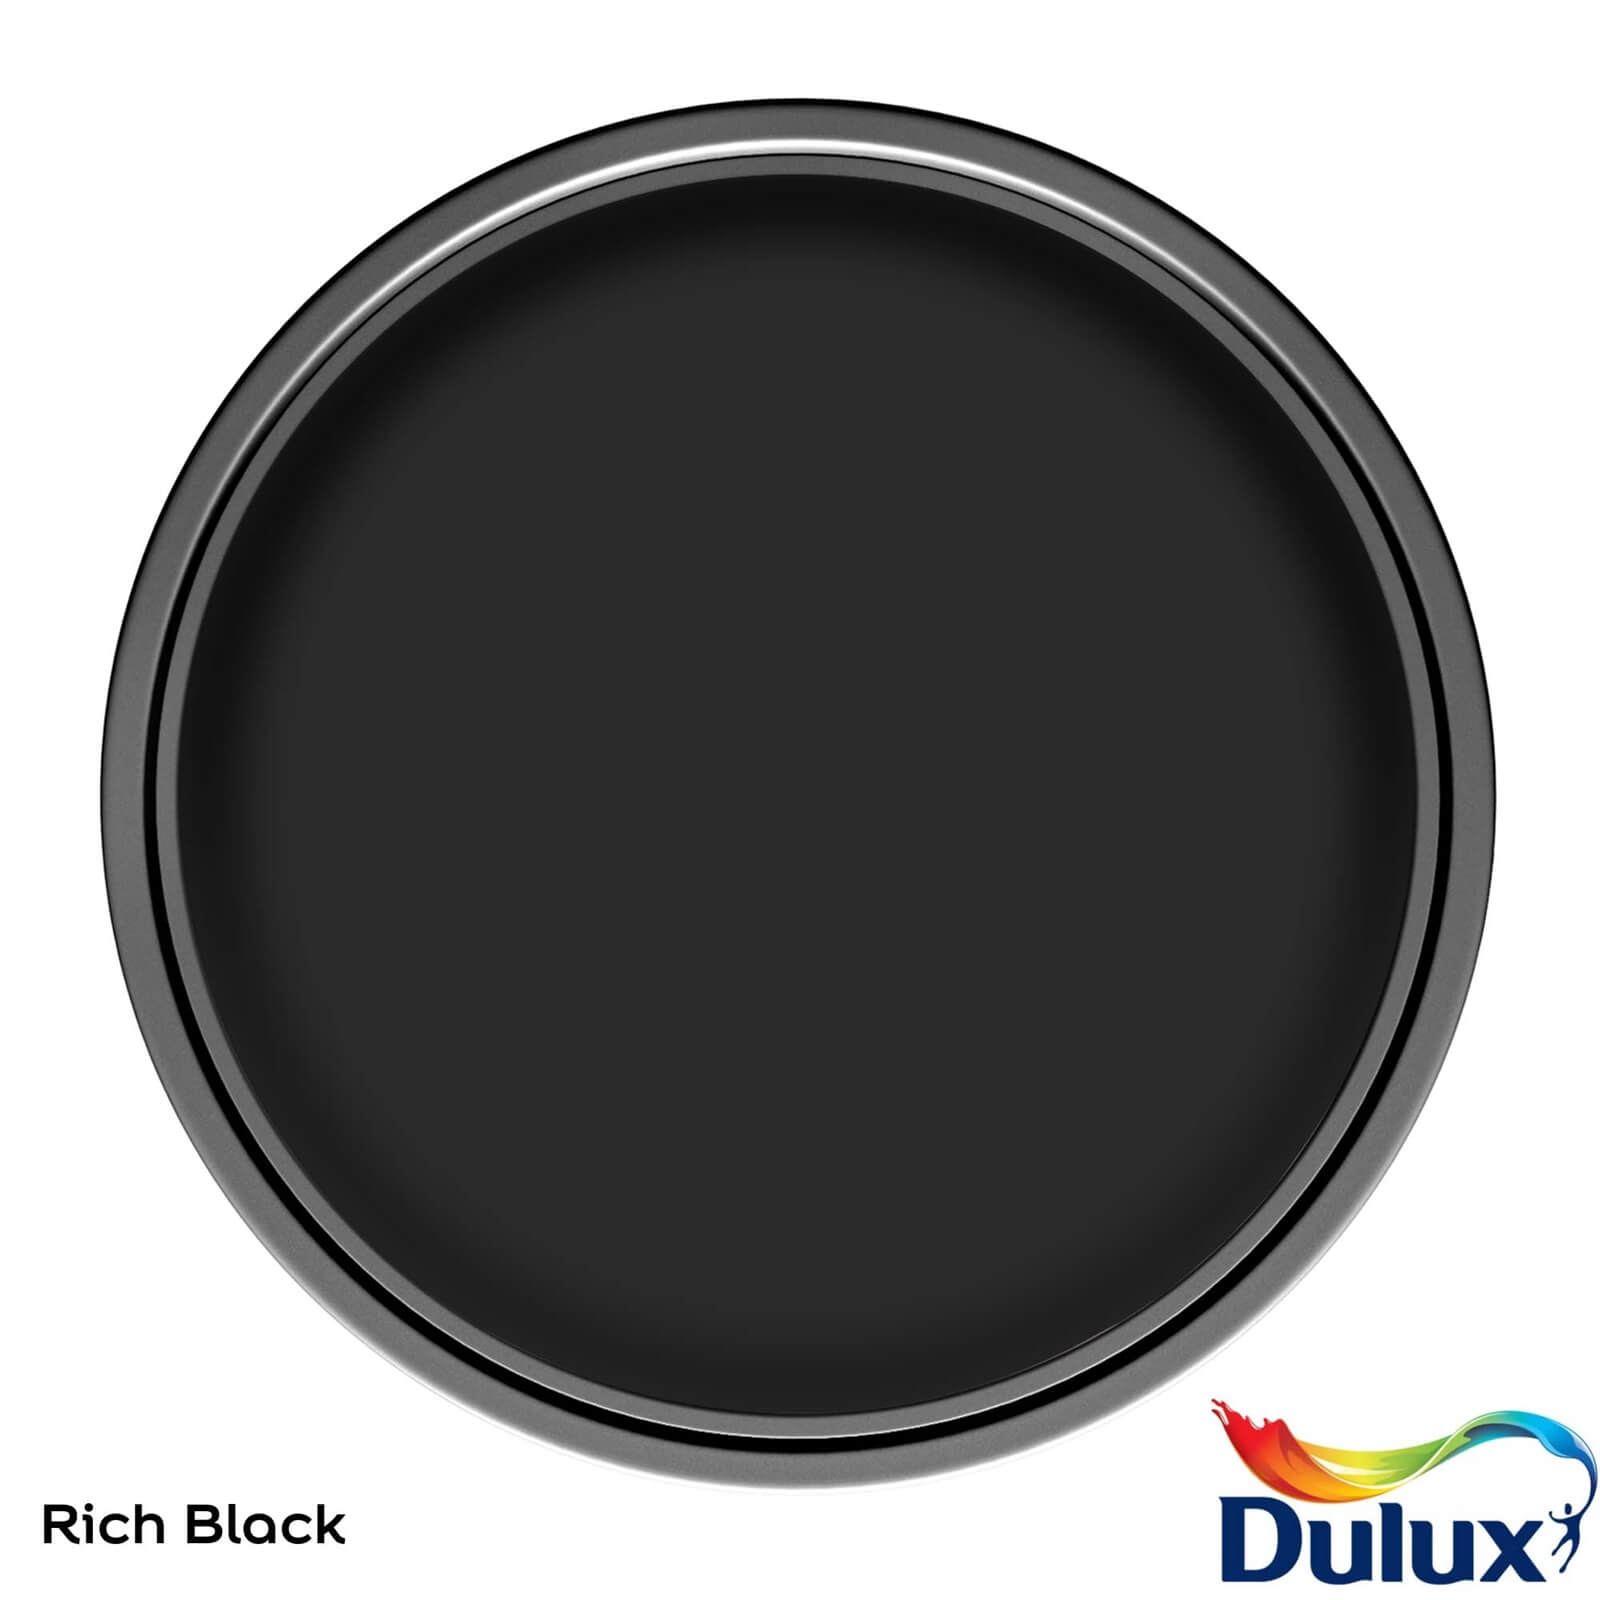 Dulux Easycare Washable & Tough Matt Paint Rich Black - 2.5L